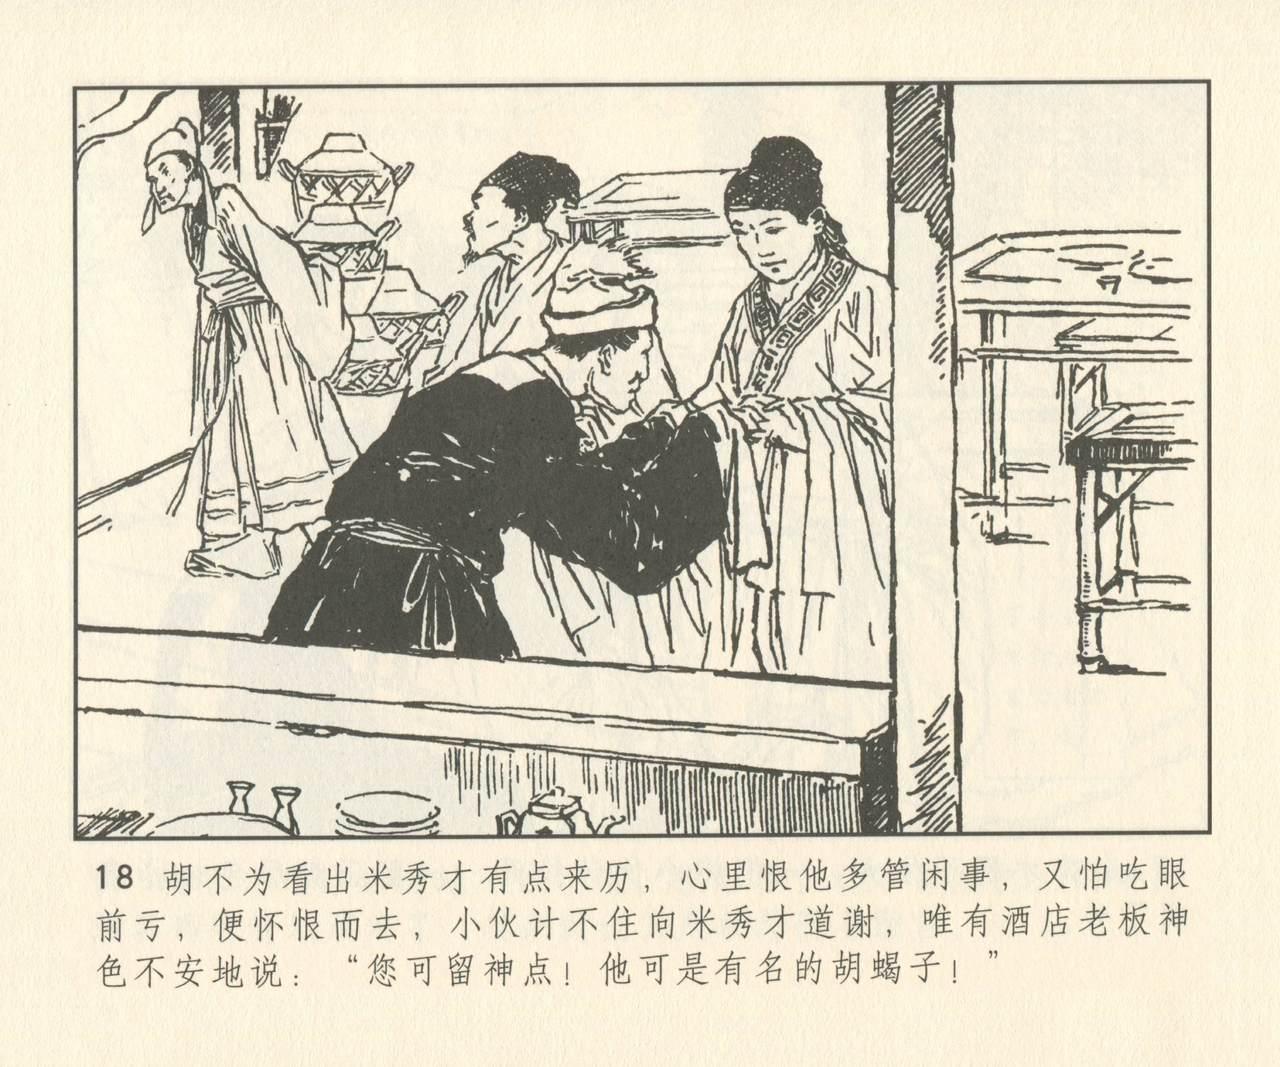 聊斋志异 张玮等绘 天津人民美术出版社 卷二十一 ~ 三十 146